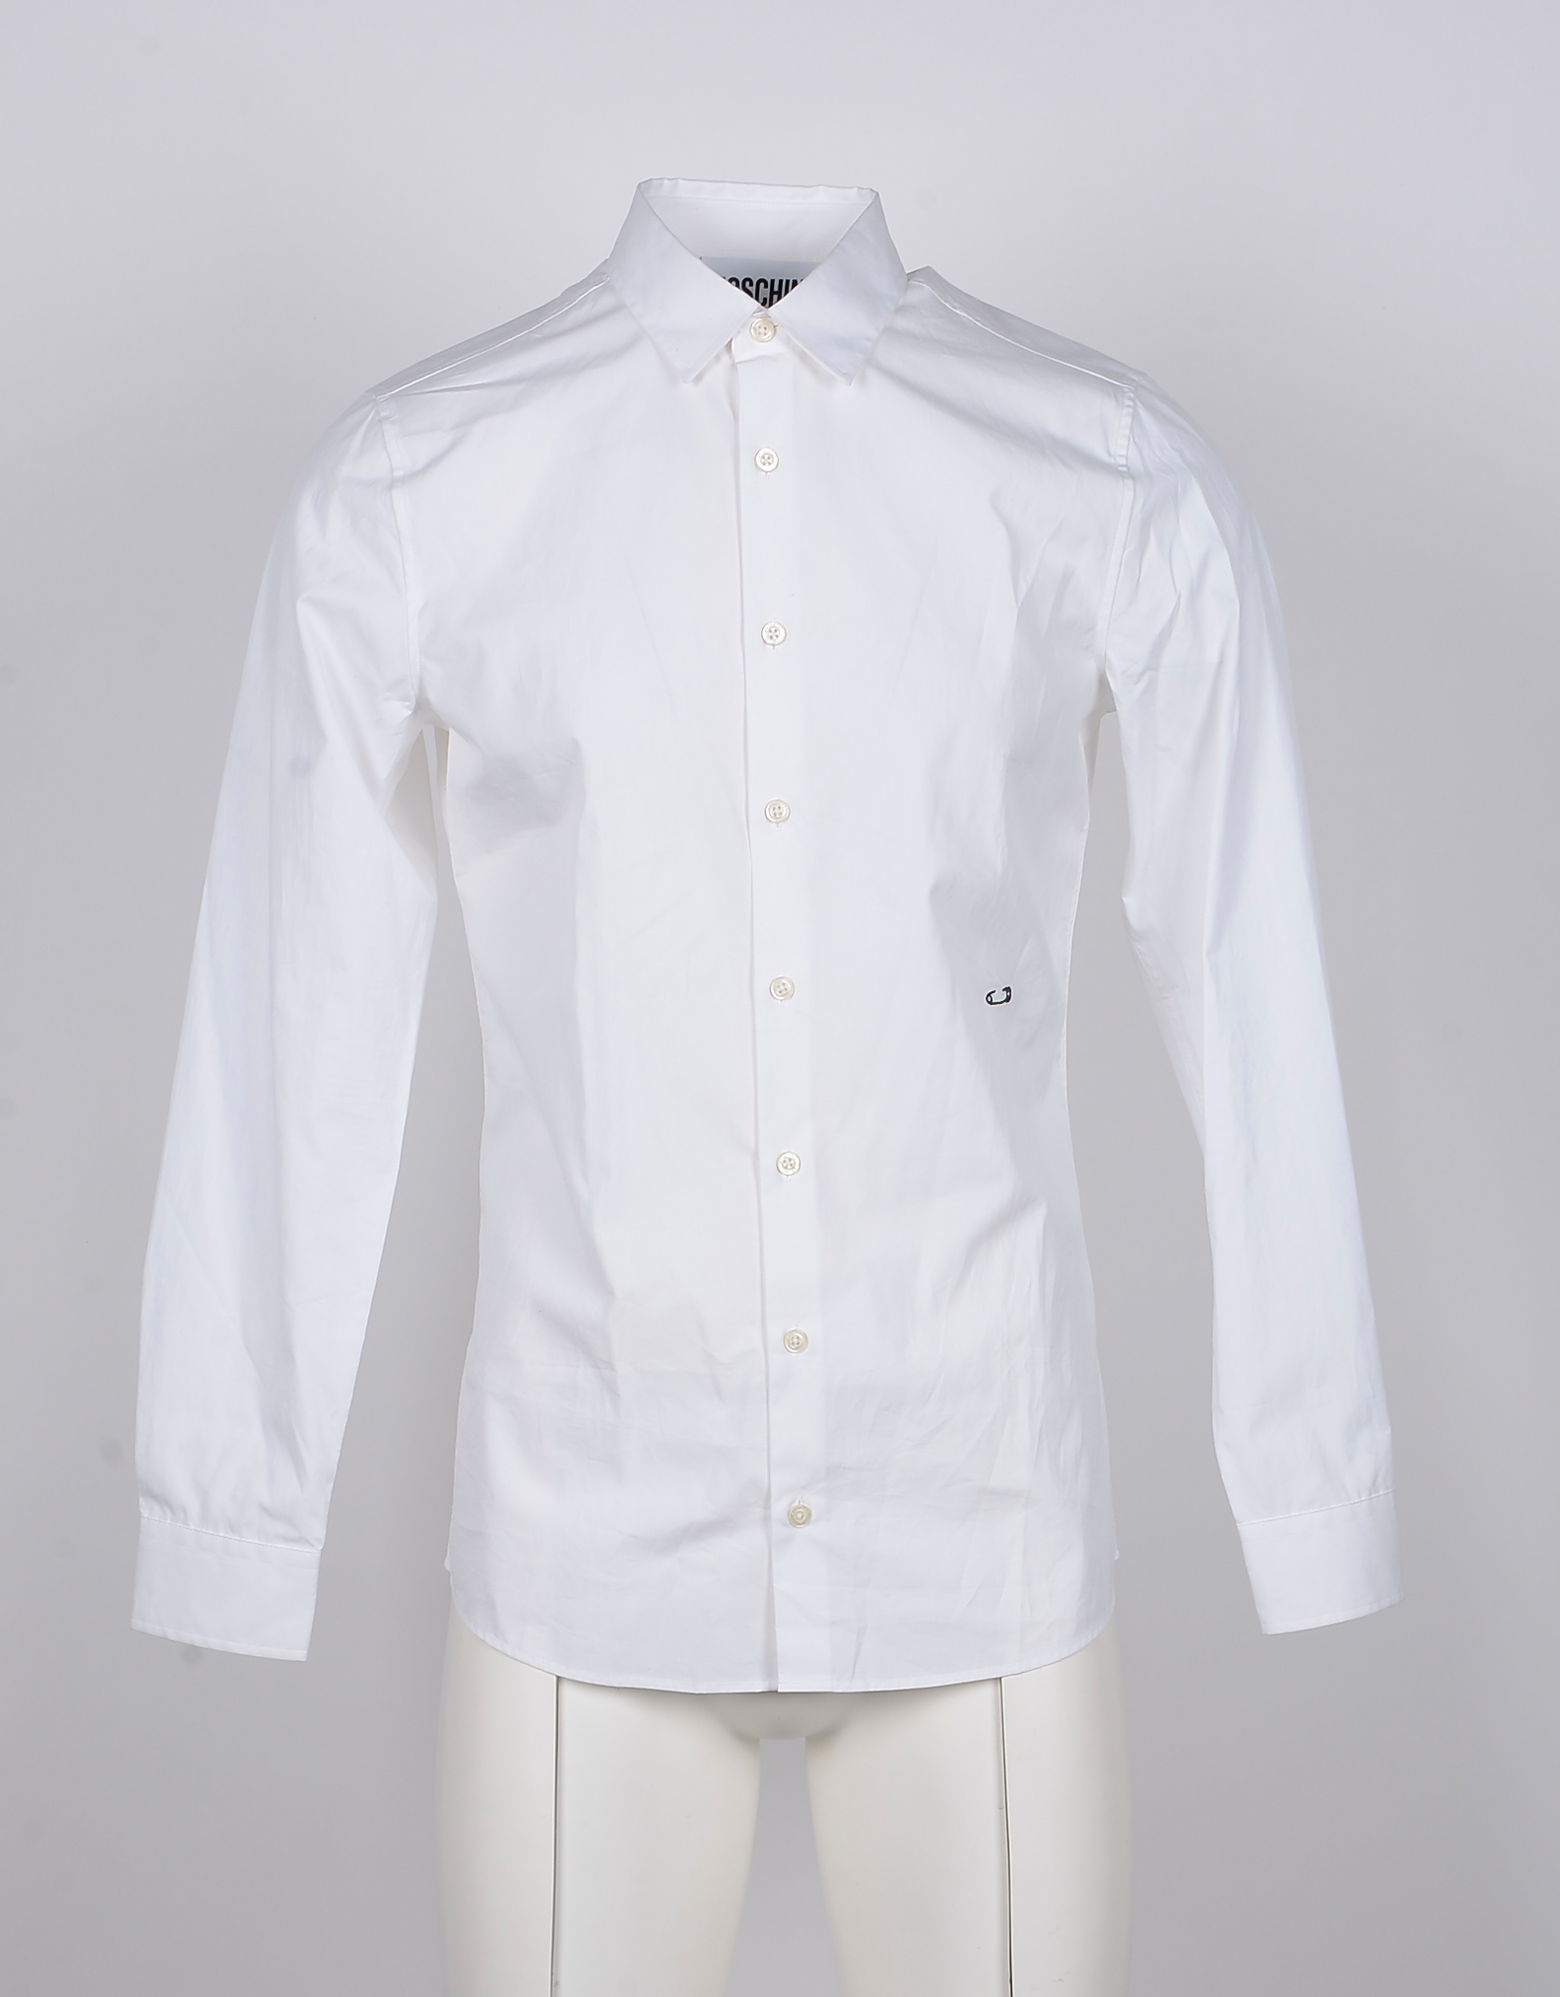 moschino white shirt mens